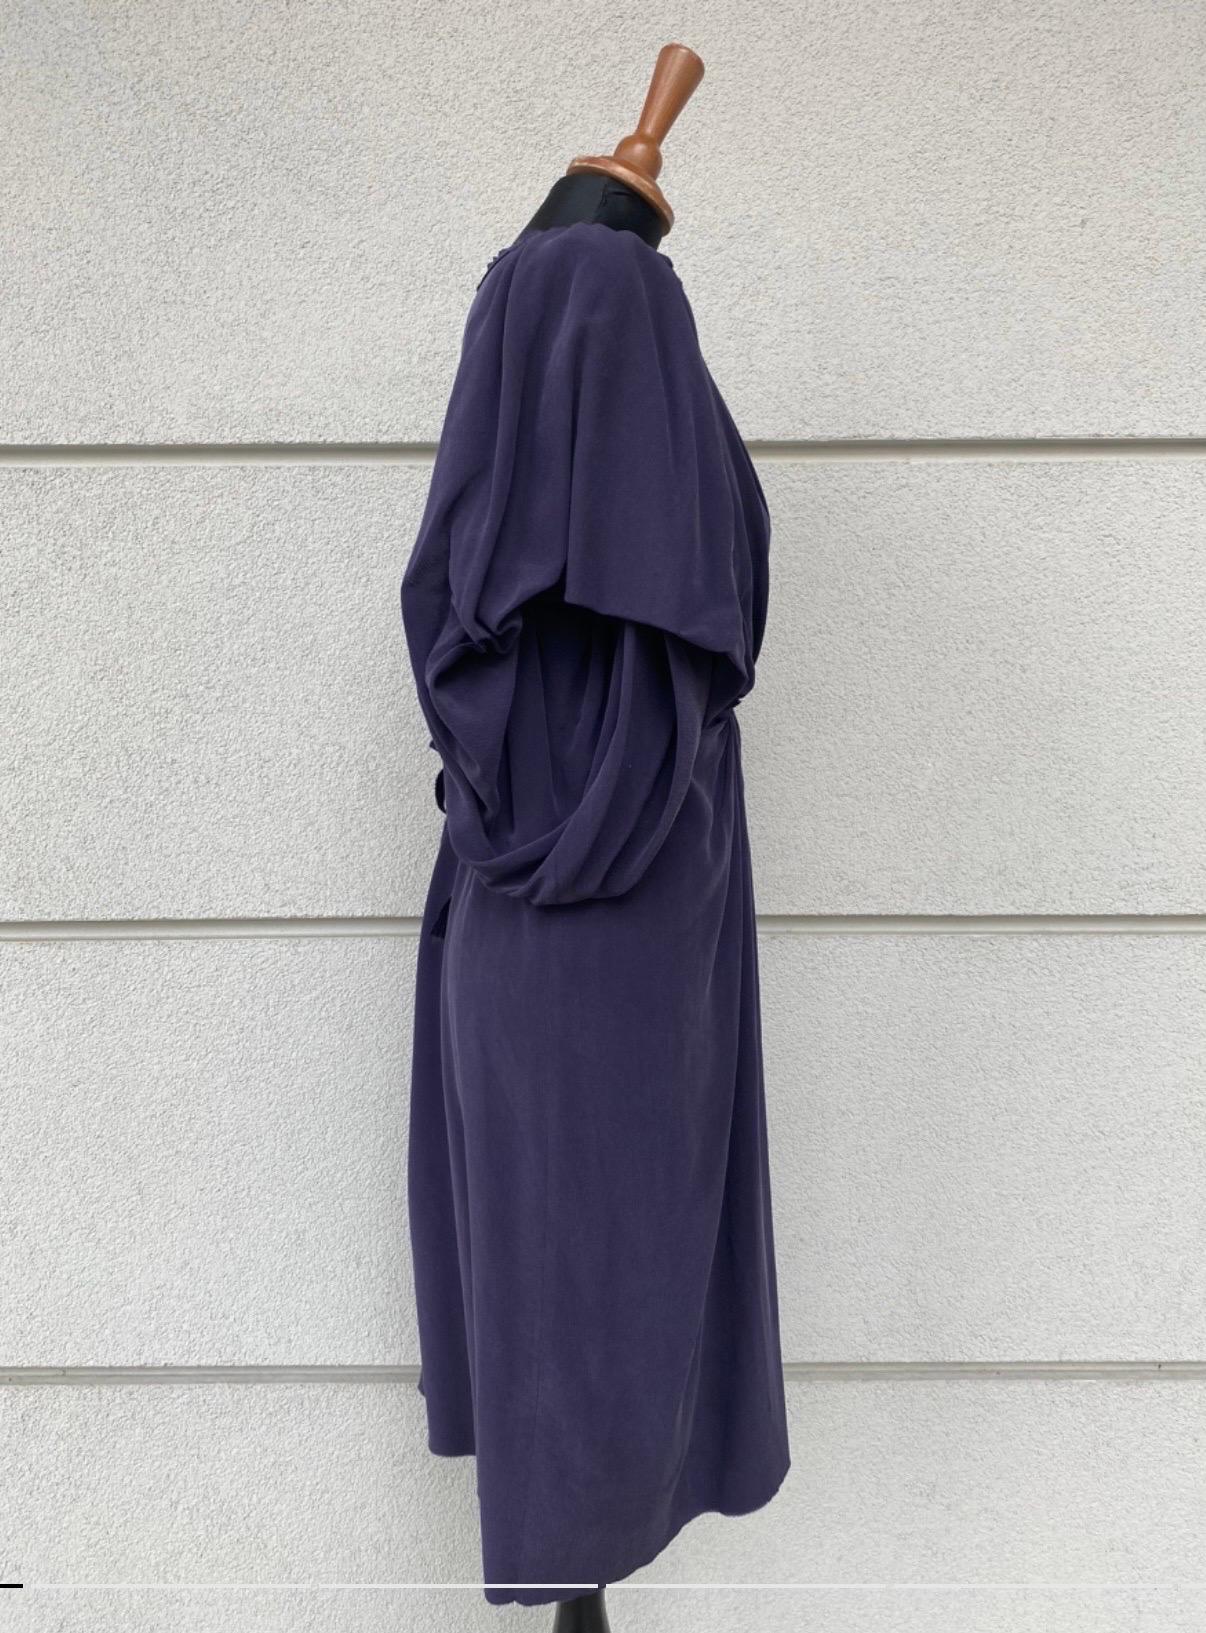 Robe midi Lanvin, été 2007.
Taille 40 en France (44 en Italie) en soie lavée comme indiqué sur l'étiquette, en violet avec des manches très larges. Doté d'une ceinture à la taille toujours dans la même matière, le bas de la robe est brut, mesures :